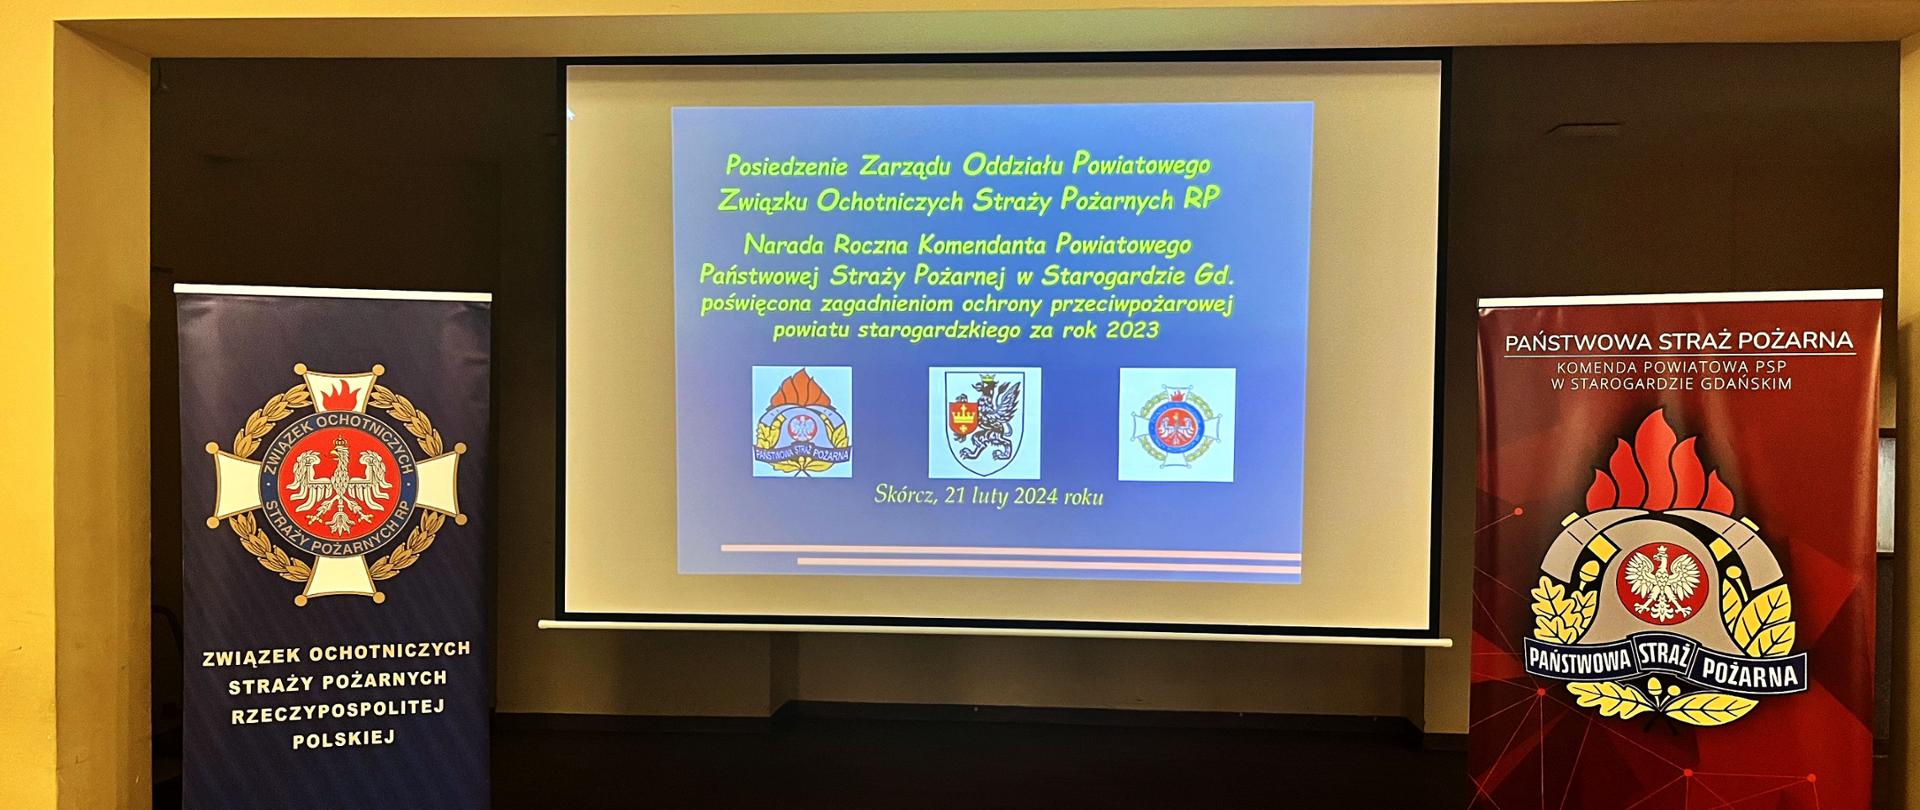 Zdjęcie przedstawia banery reklamowe Państwowej Straży Pożarnej, Zarządu Oddziału Powiatowego Związku Ochotniczych Straży Pożarnych RP oraz stronę z pokazu.